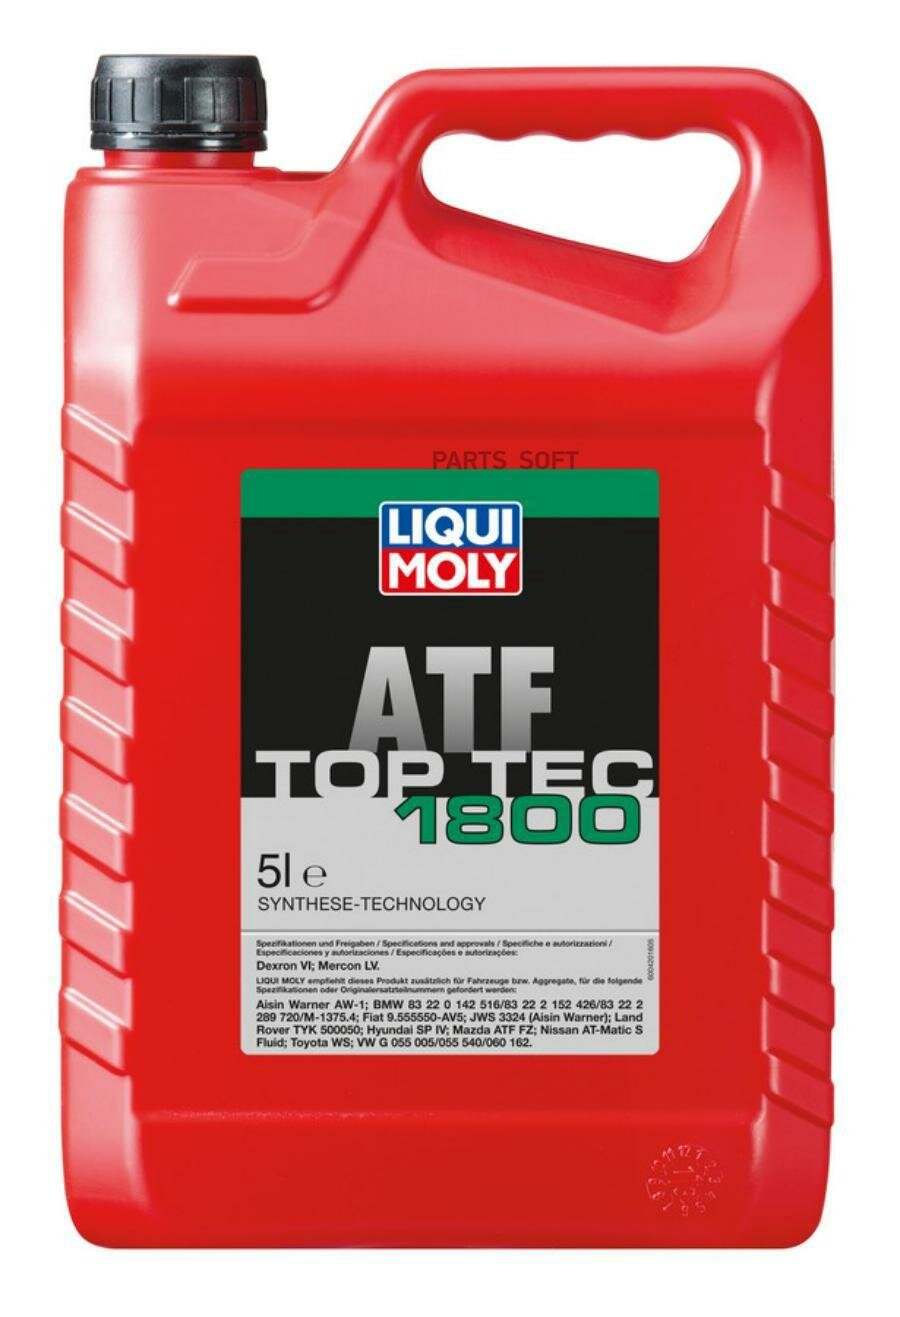 LIQUI MOLY 20662 масло для АКПП Top Tec ATF 1800 (5L)